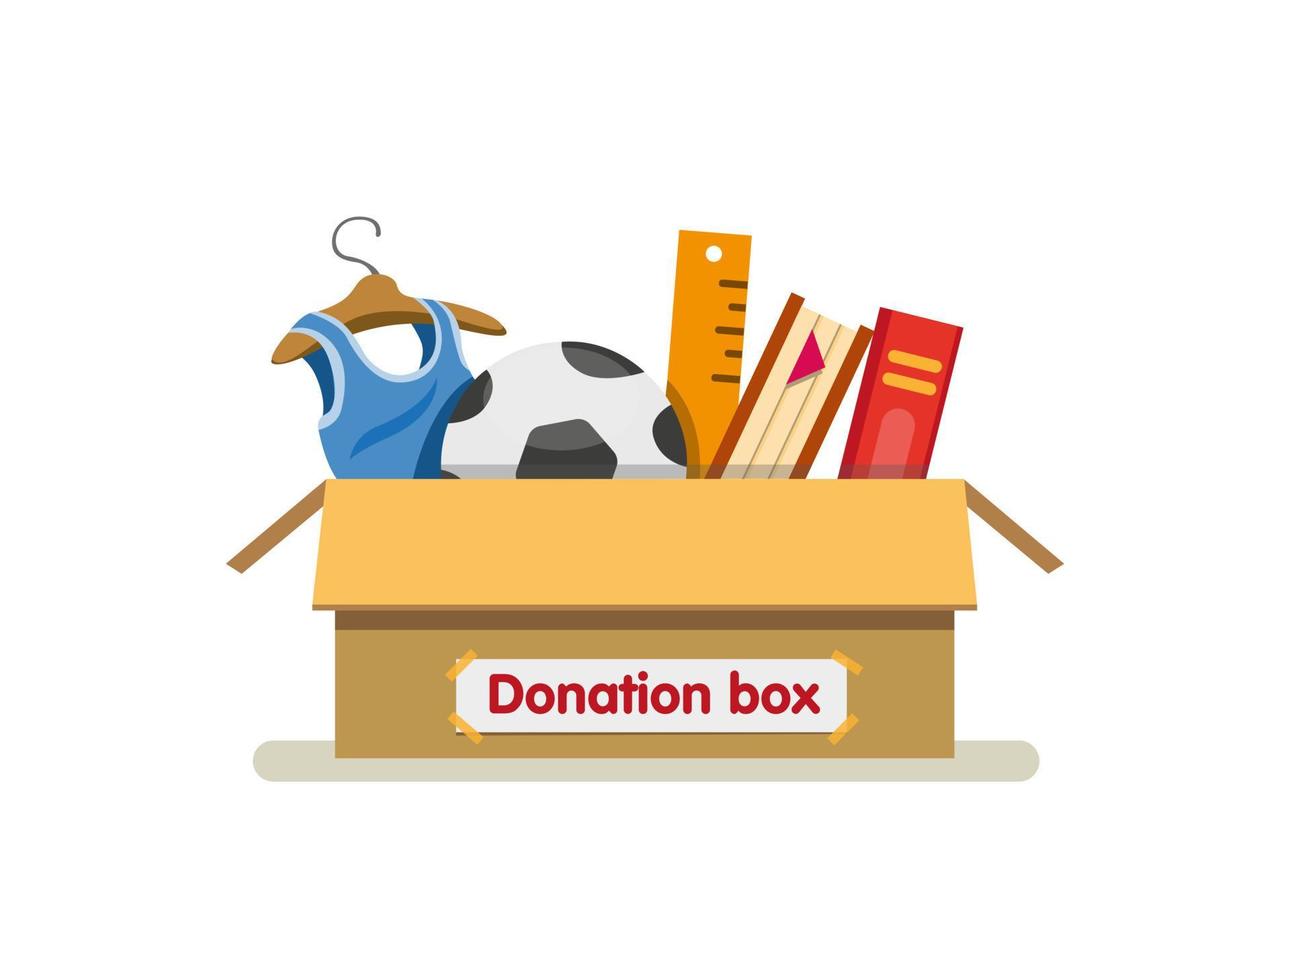 libros, juguetes y ropa en cartón de caja de donación listo para enviar para caridad en vector de ilustración plana de dibujos animados aislado en fondo blanco